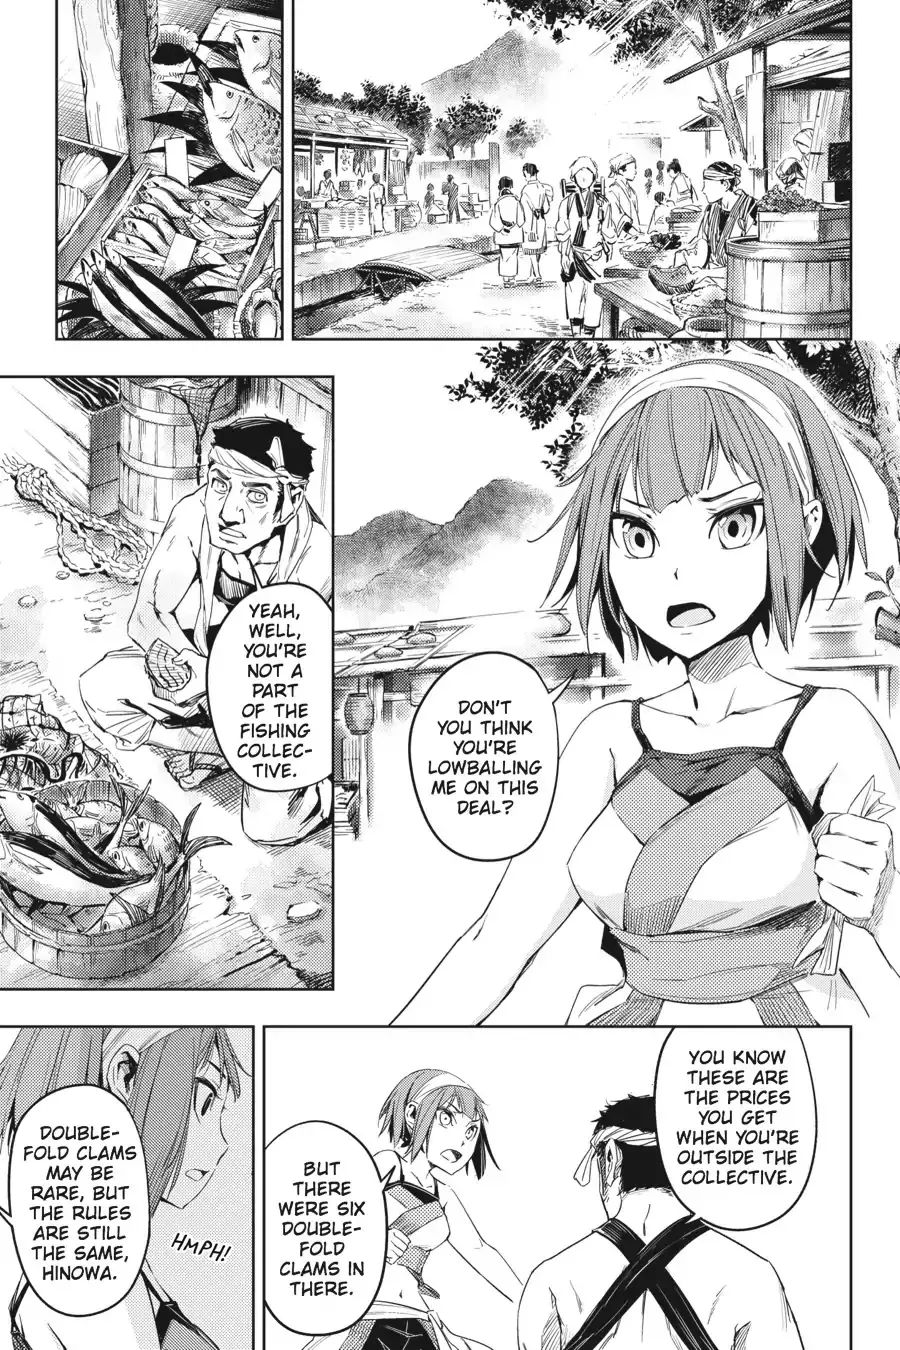 Hinowa Ga Yuku - 3 page 4-e13678fd